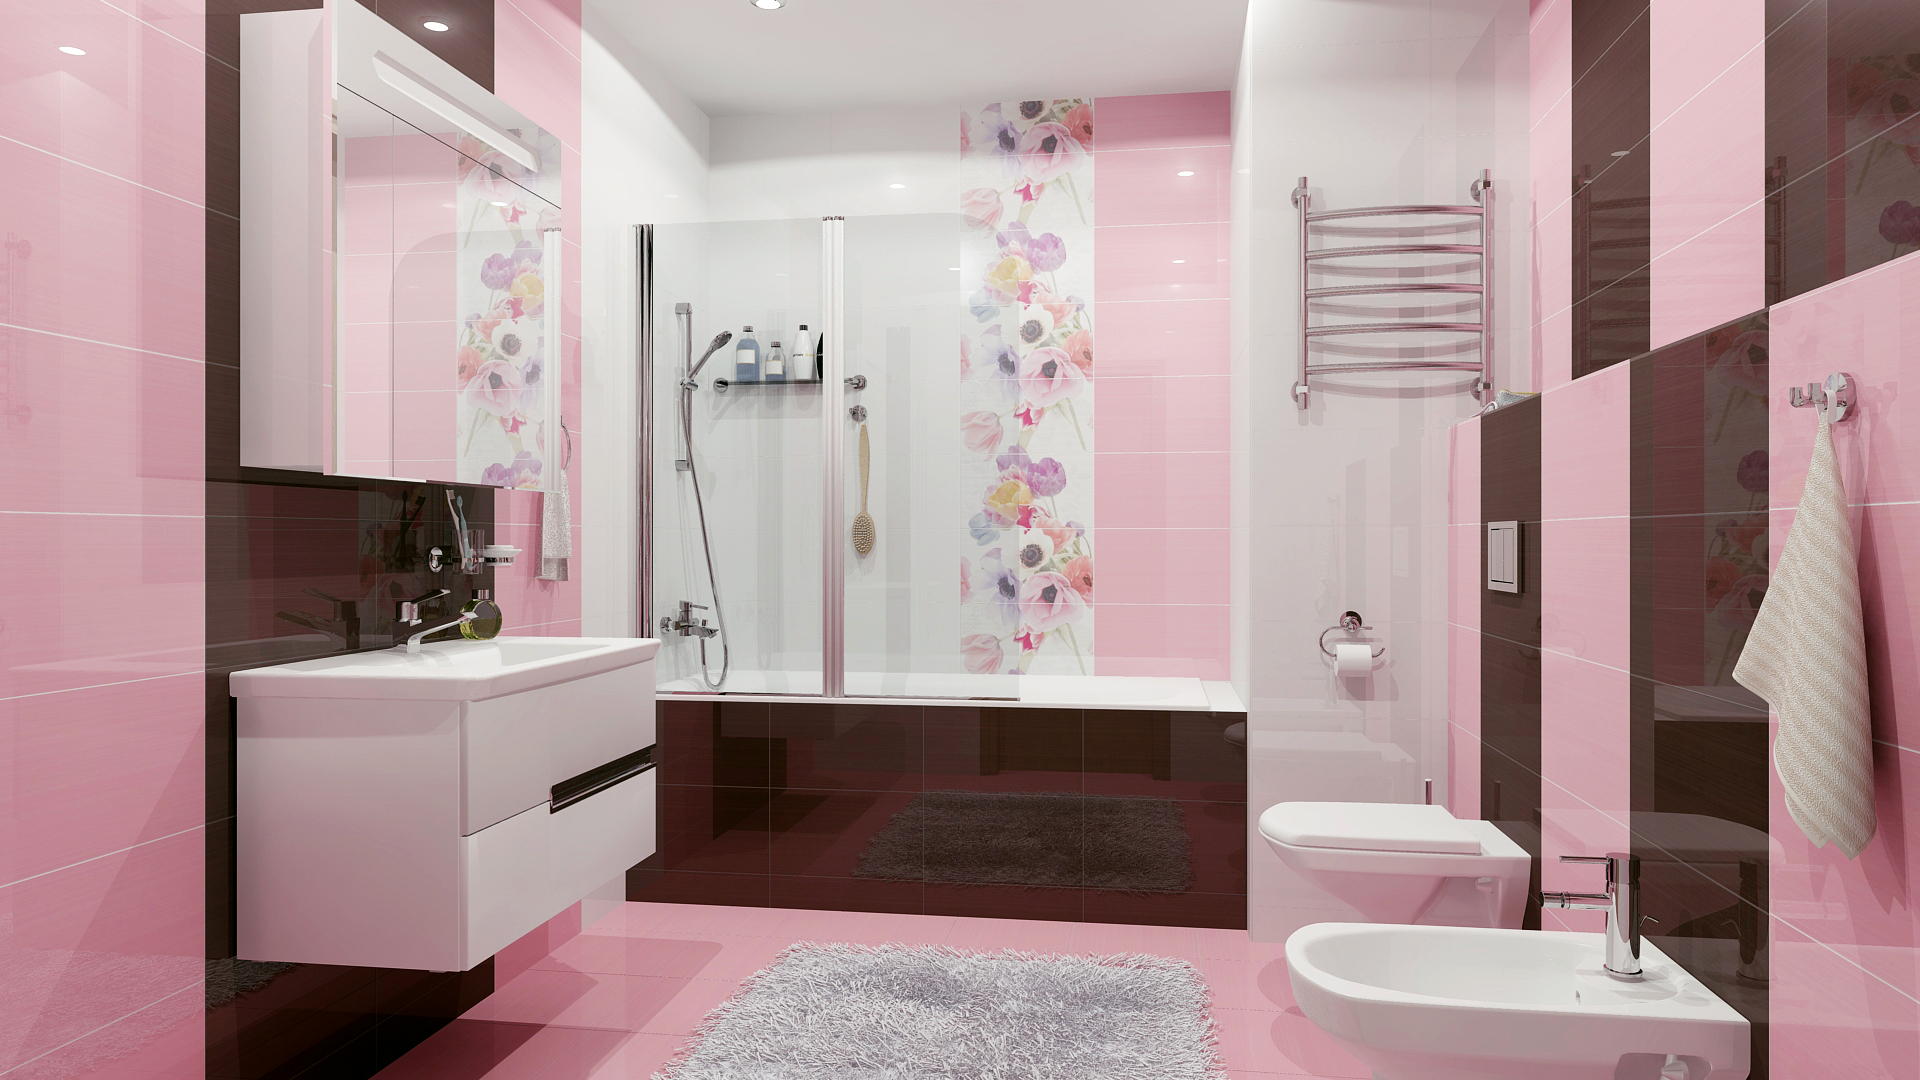 Дизайн плитки в ванной комнате варианты фото